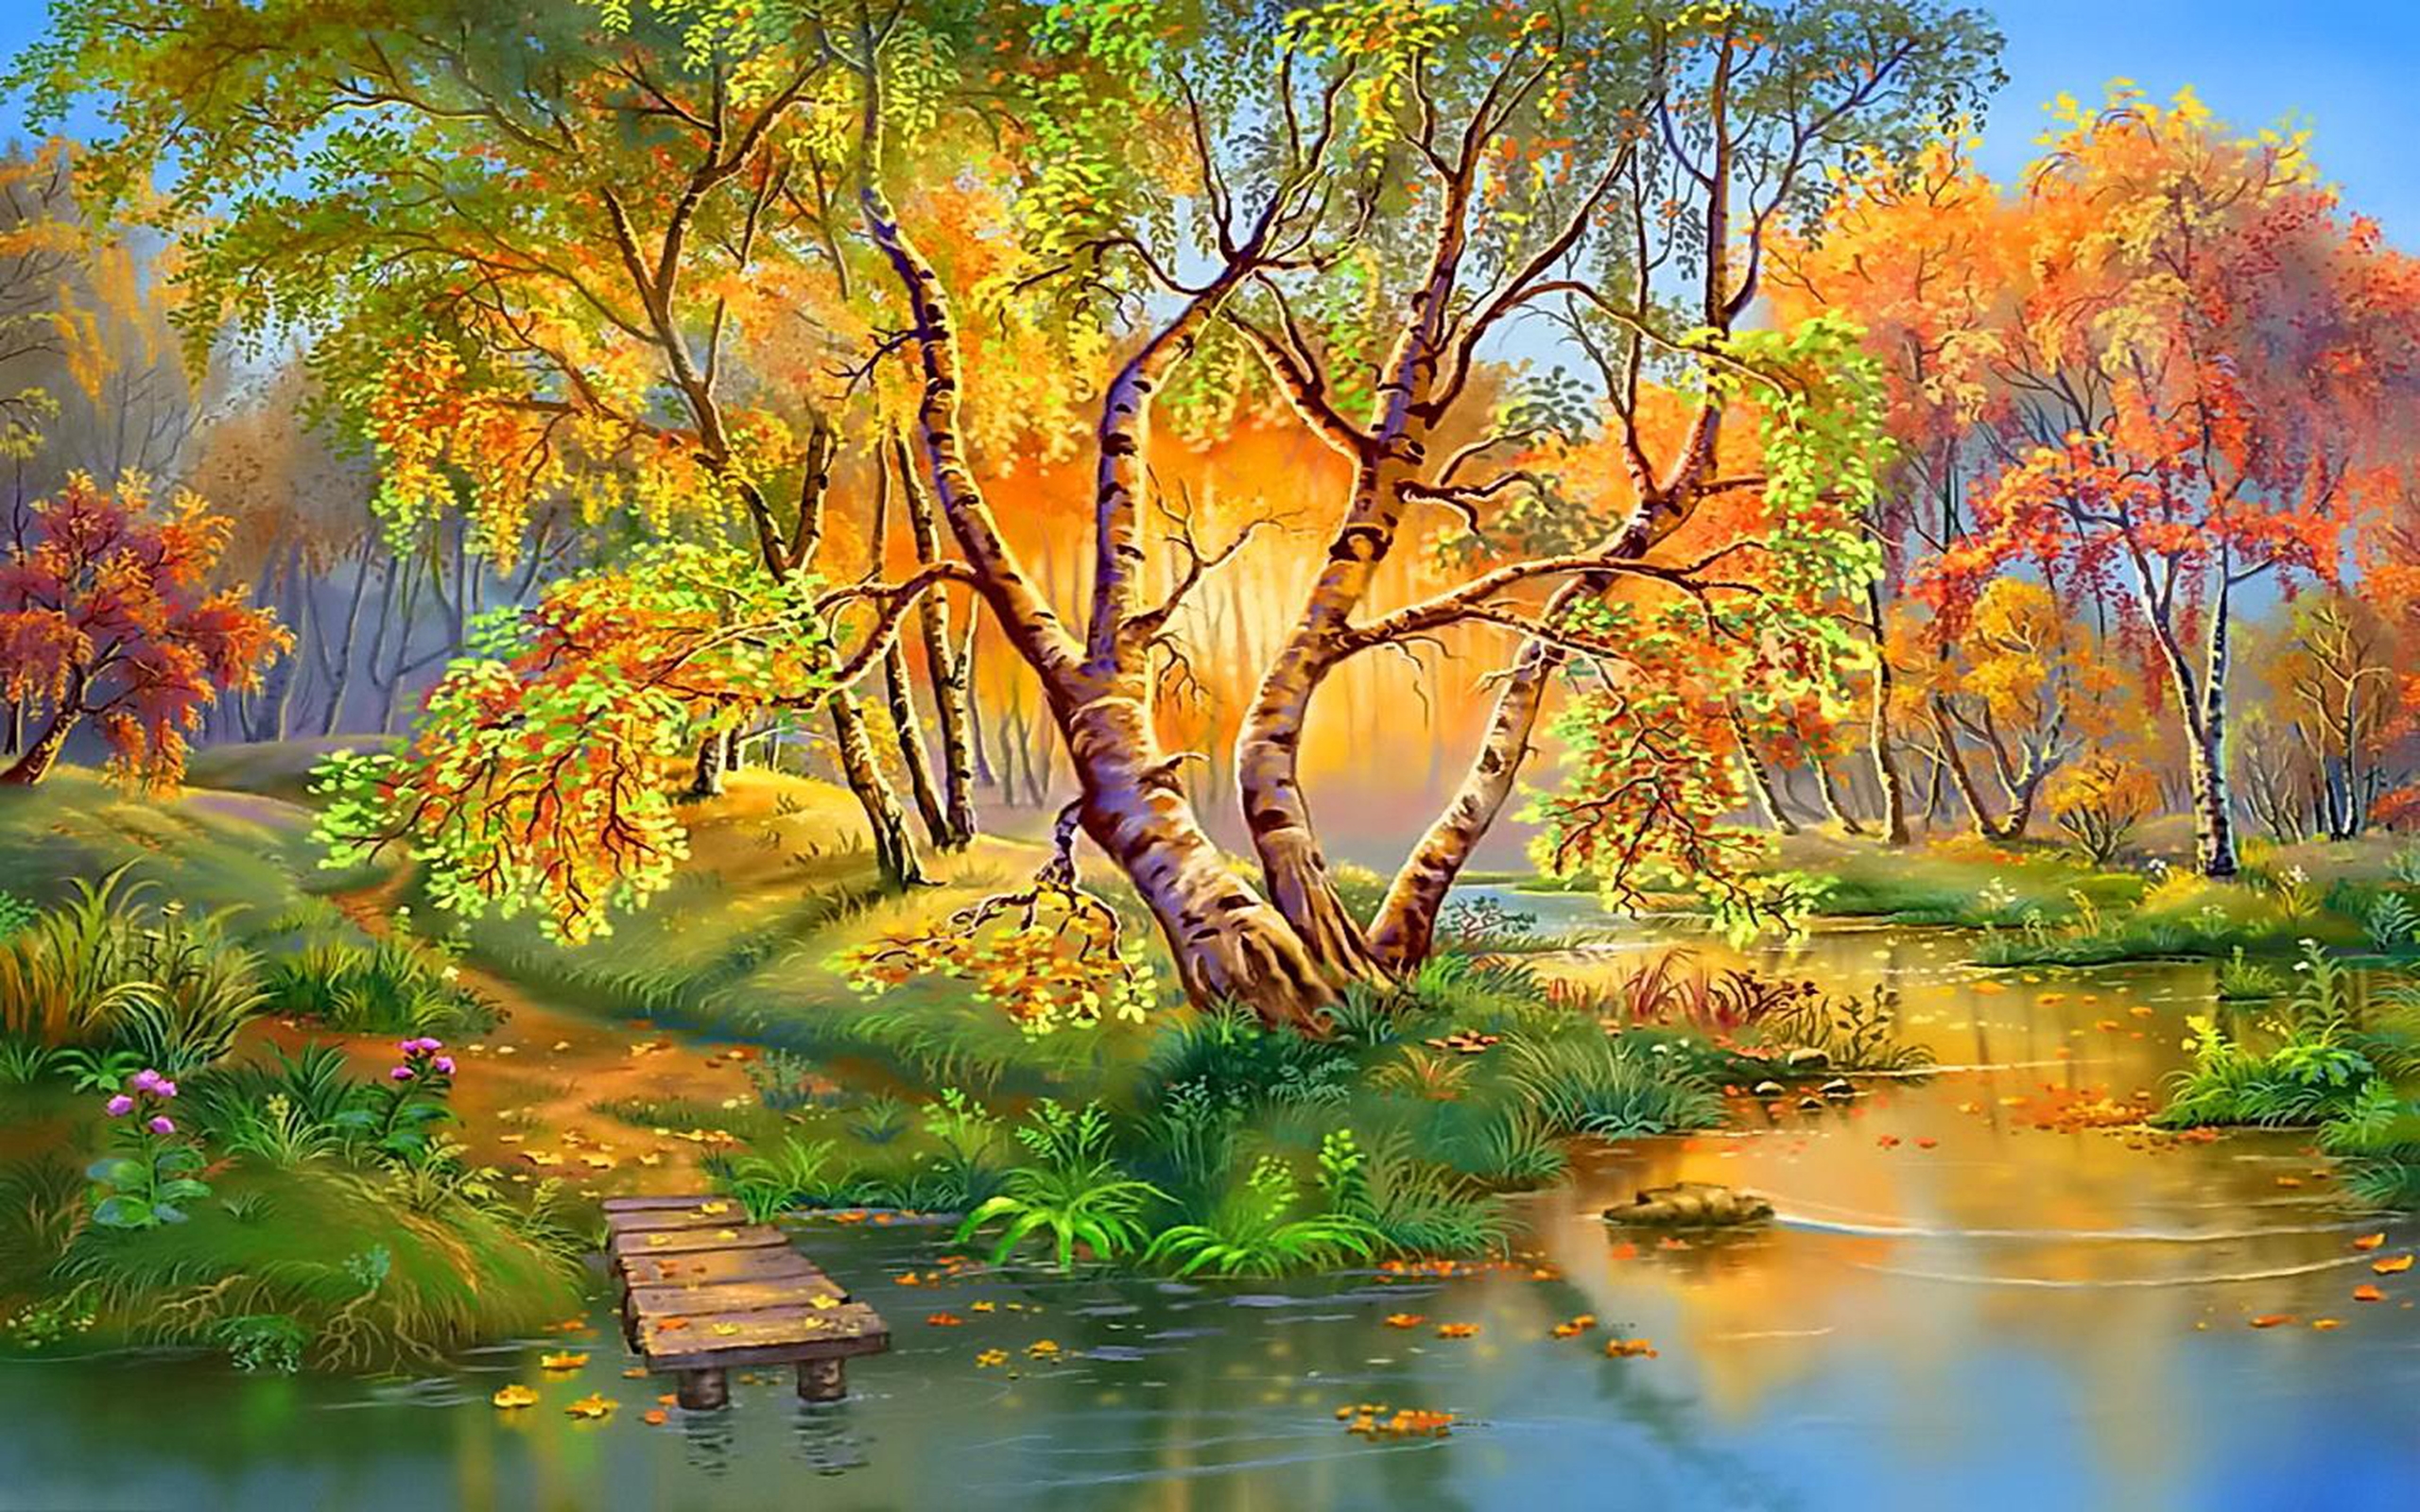 Скачать обои бесплатно Осень, Озеро, Дерево, Картина, Художественные картинка на рабочий стол ПК